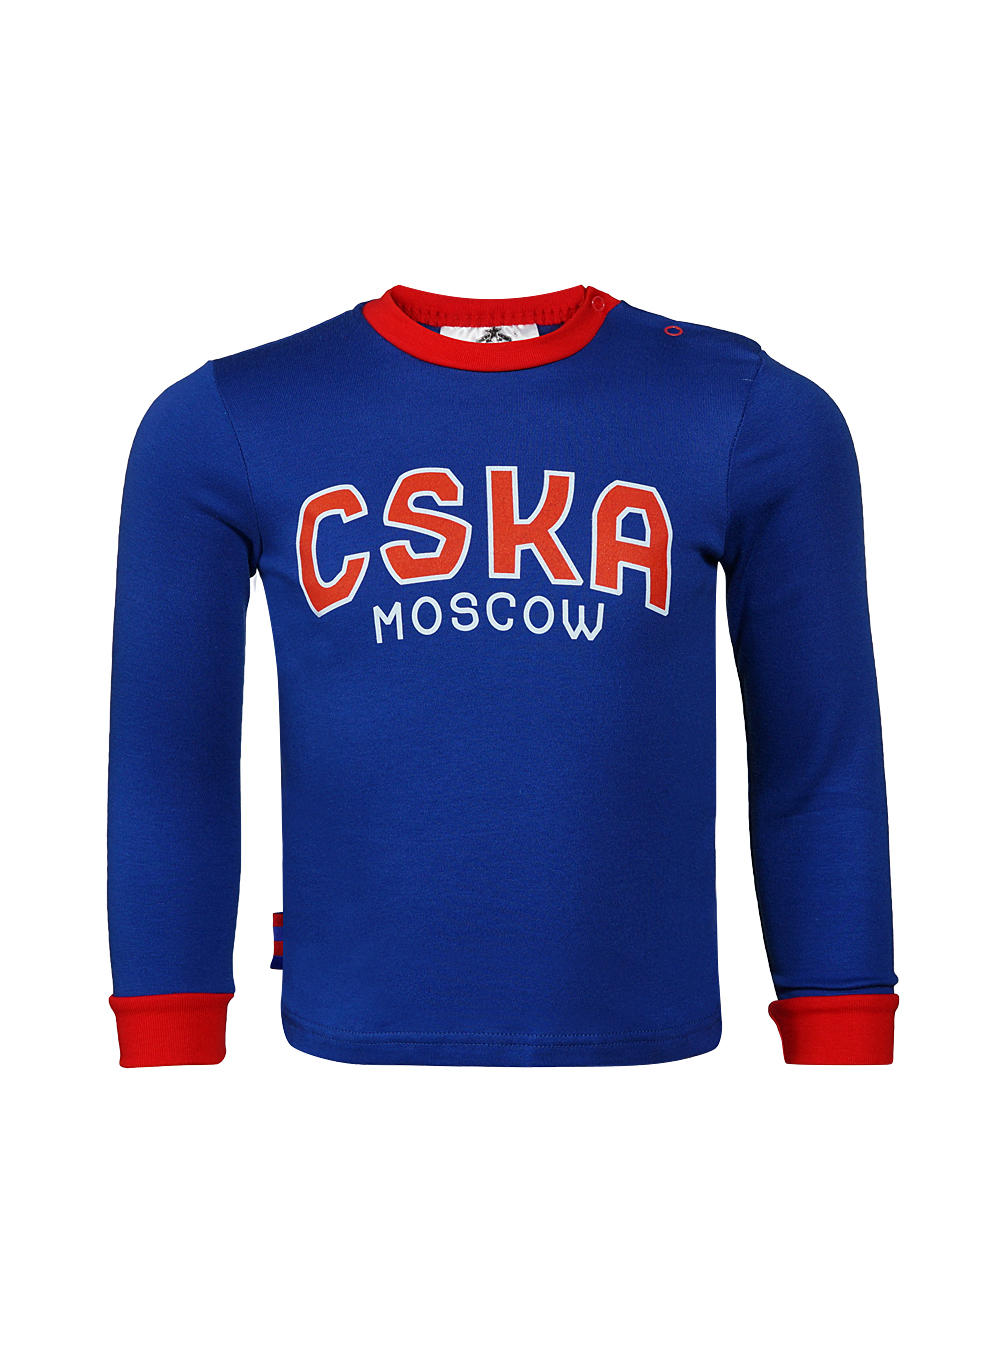 Купить Футболка с длинным рукавом CSKA Moscow синяя (98) по Нижнему Новгороду